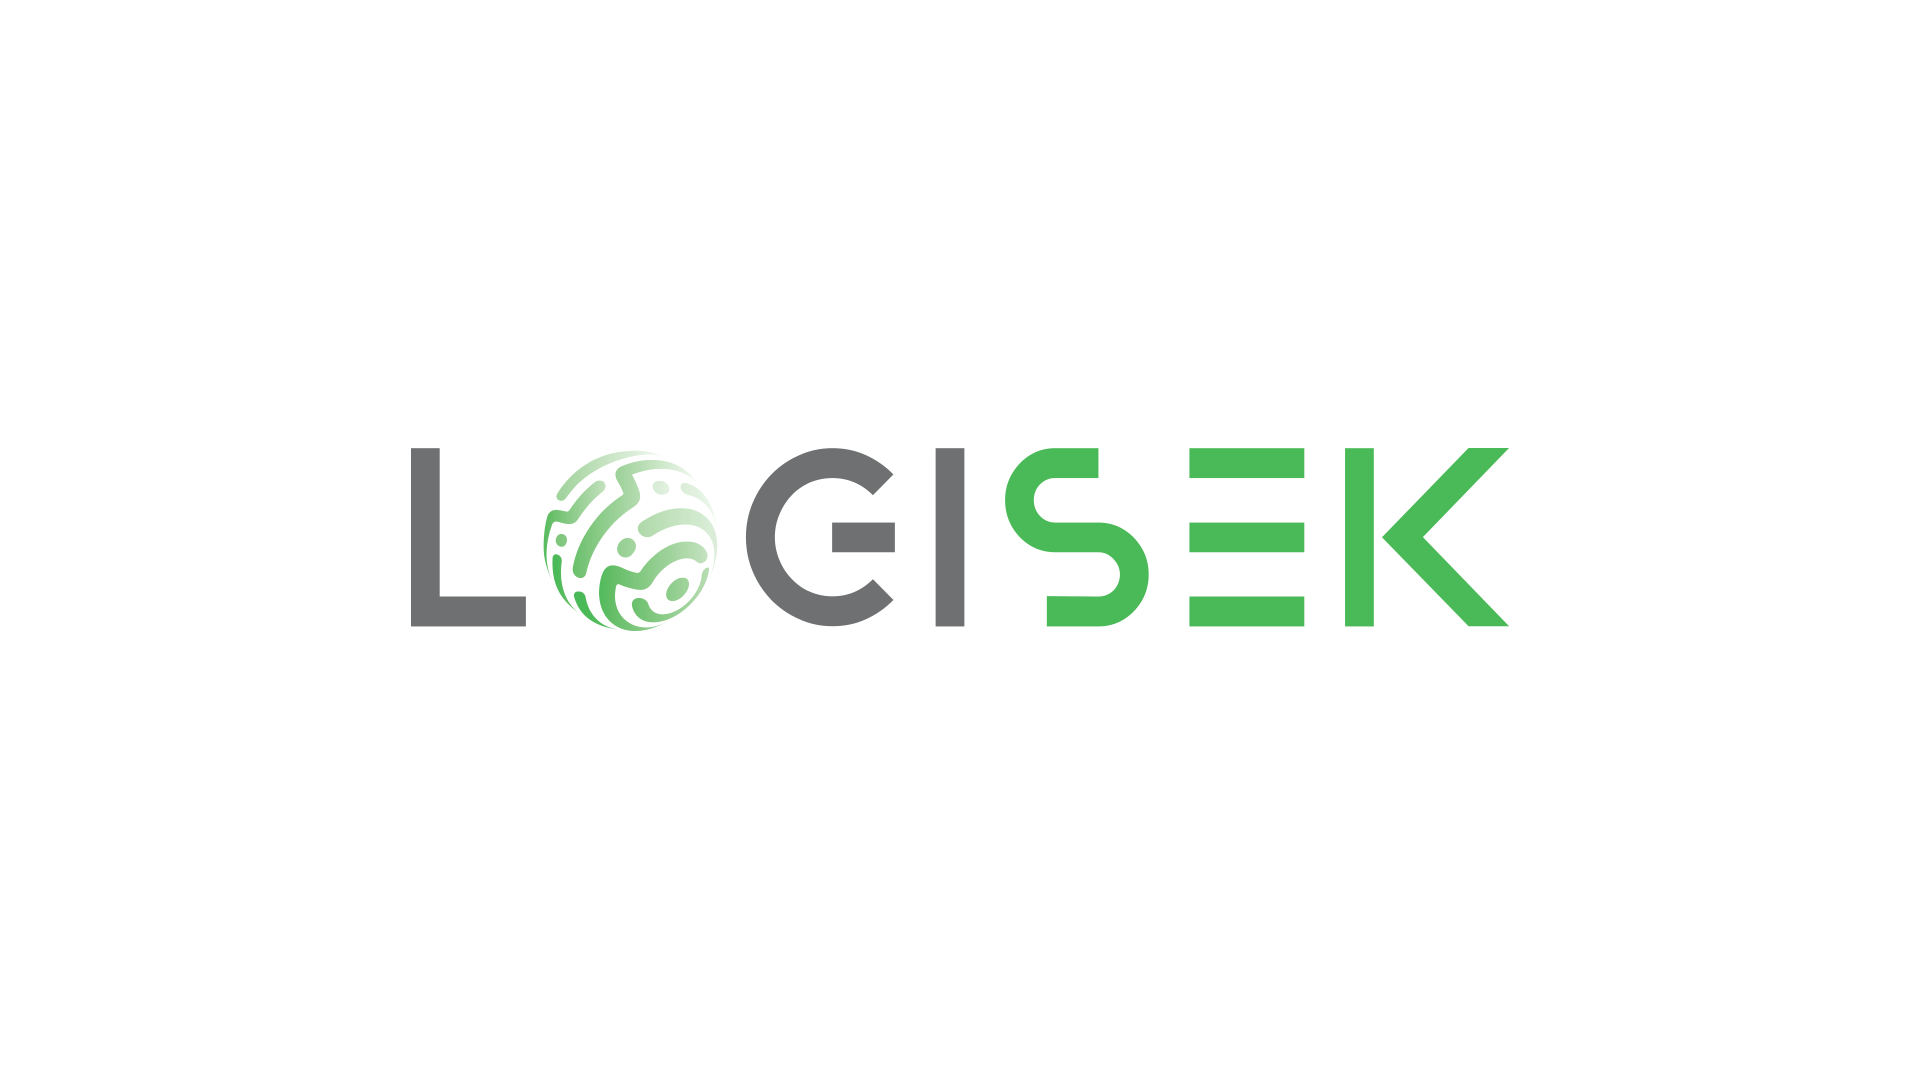 Logisek logo